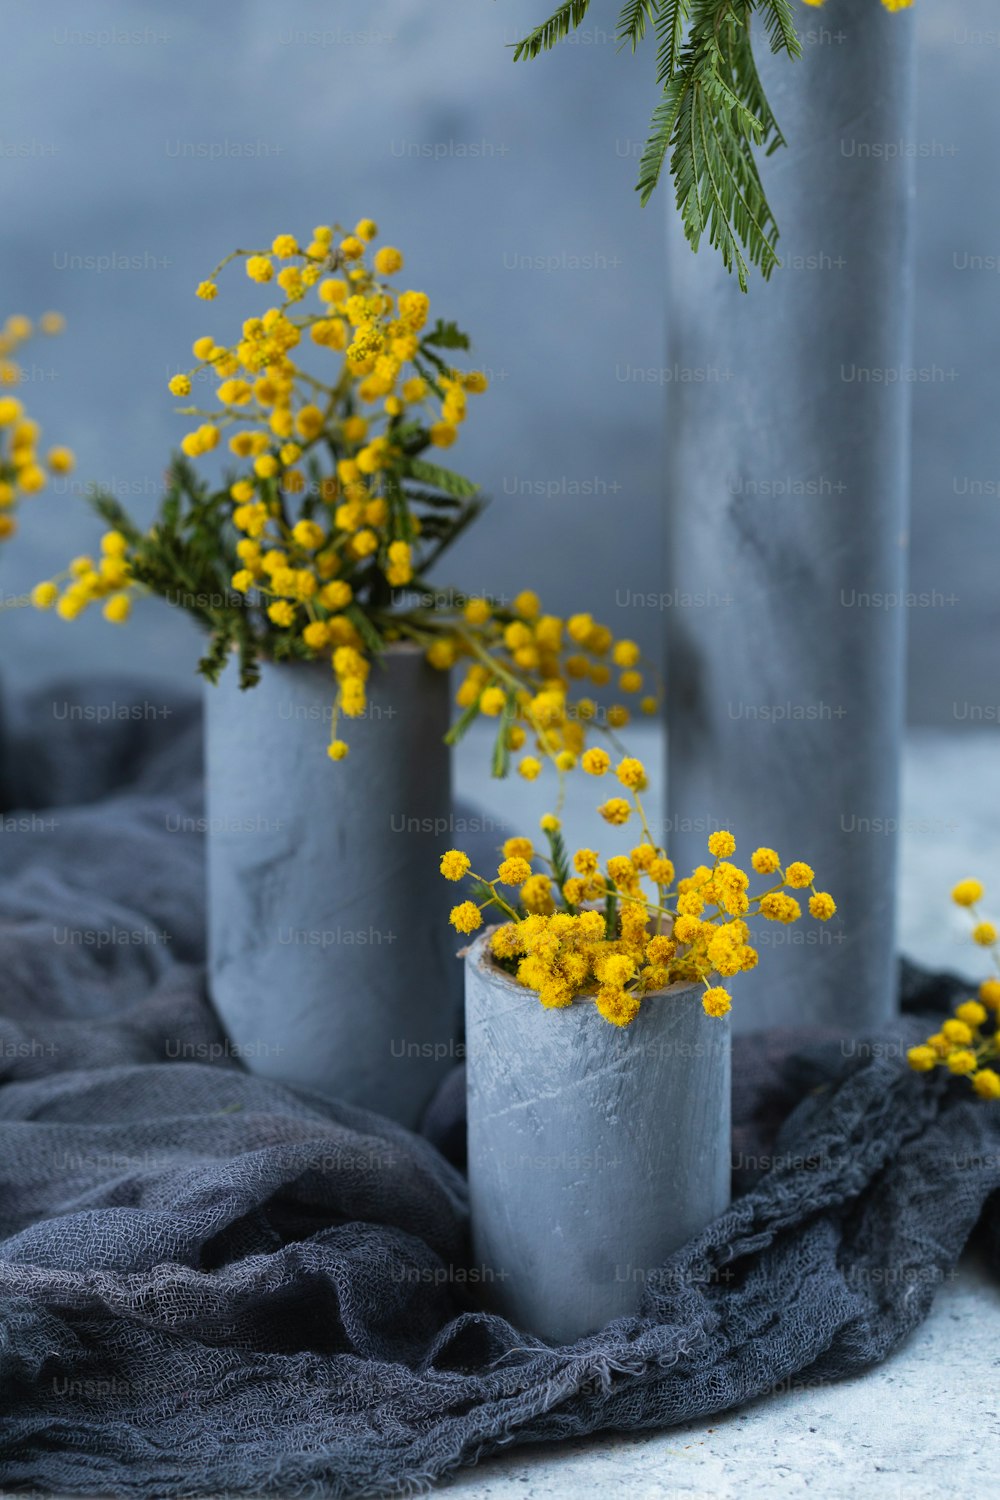 노란색 꽃이있는 세 개의 시멘트 꽃병